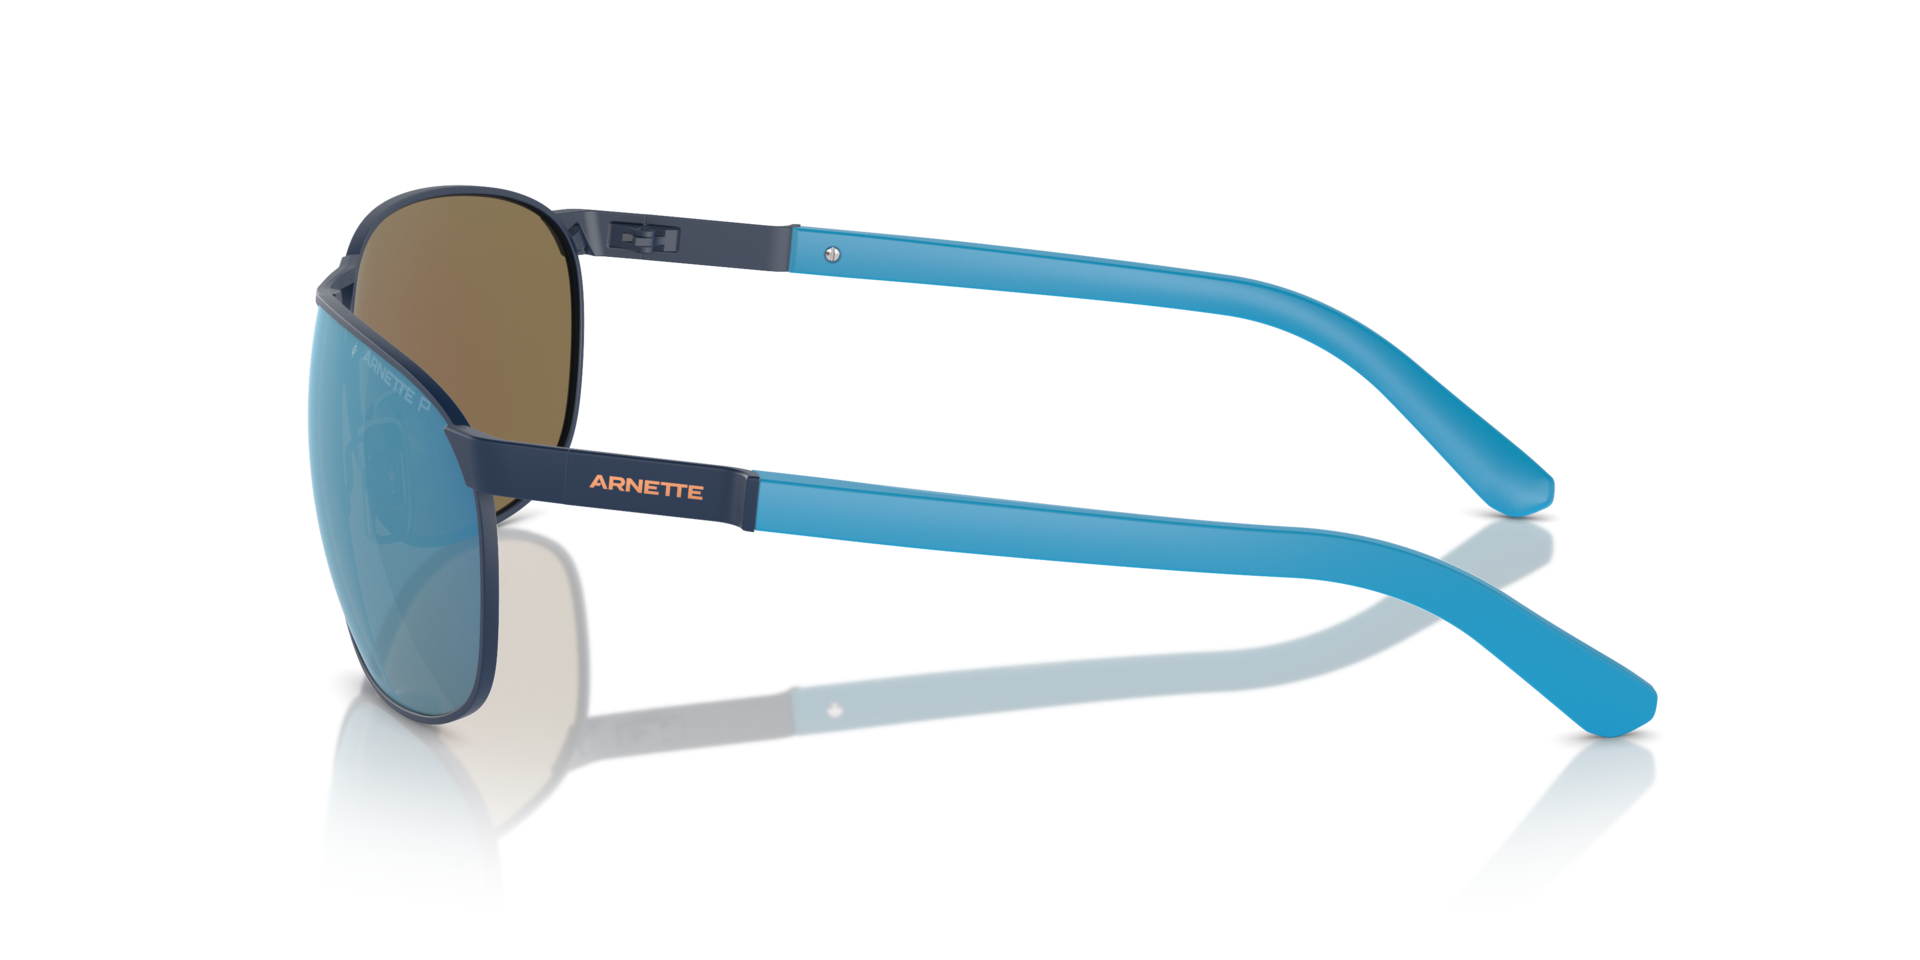 Das Bild zeigt die Sonnenbrille AN3090 744/22 von der Marke Arnette in blau.